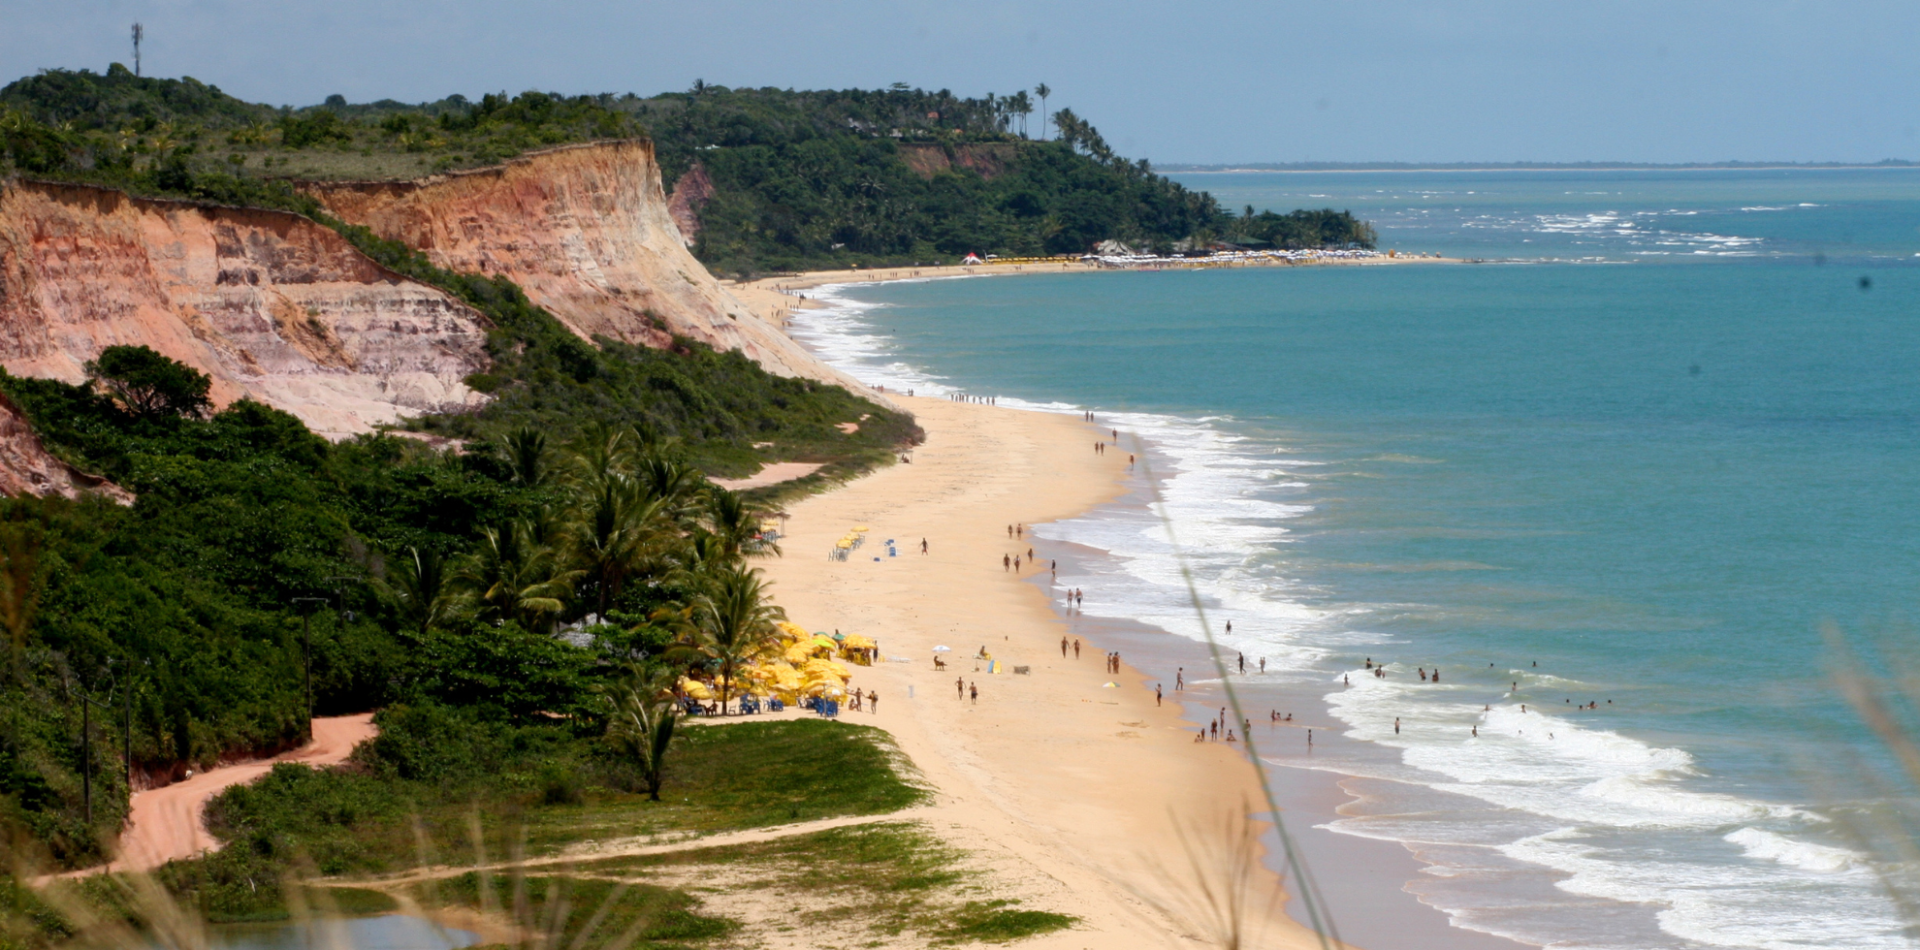 Praia com falesias em Arraial d Ajuda, vegetação entorno, mar azul e pessoas na praia